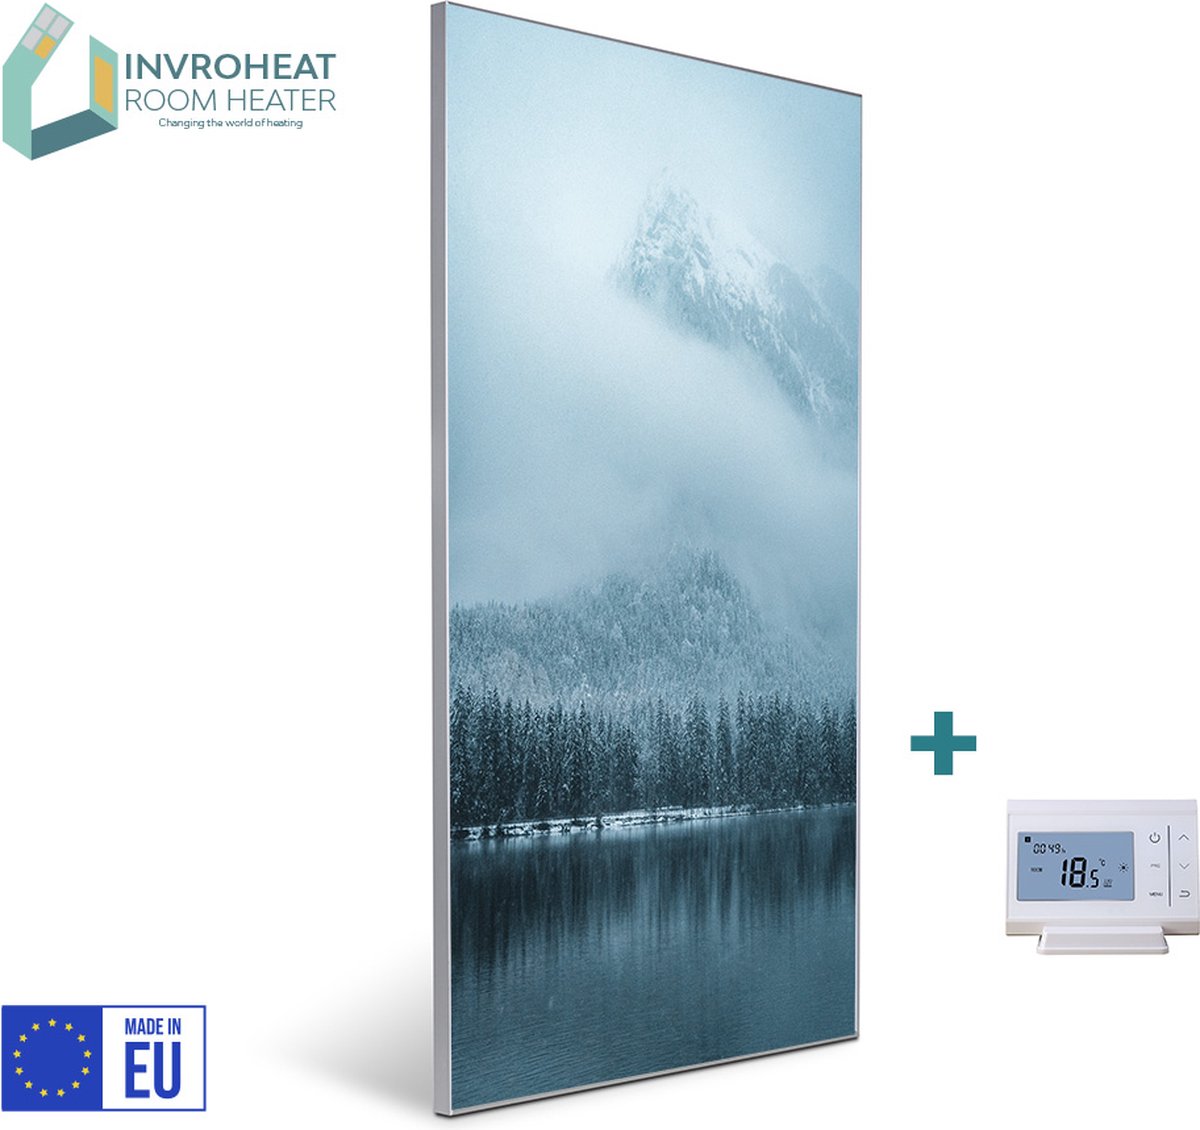 Invroheat infrarood verwarmingspaneel Reflection - 800W - 61x91.5cm - Duurzaam, zeer energie efficiënt en warmt snel op - afbeelding verwisselbaar - met display thermostaat - met afstandsbediening